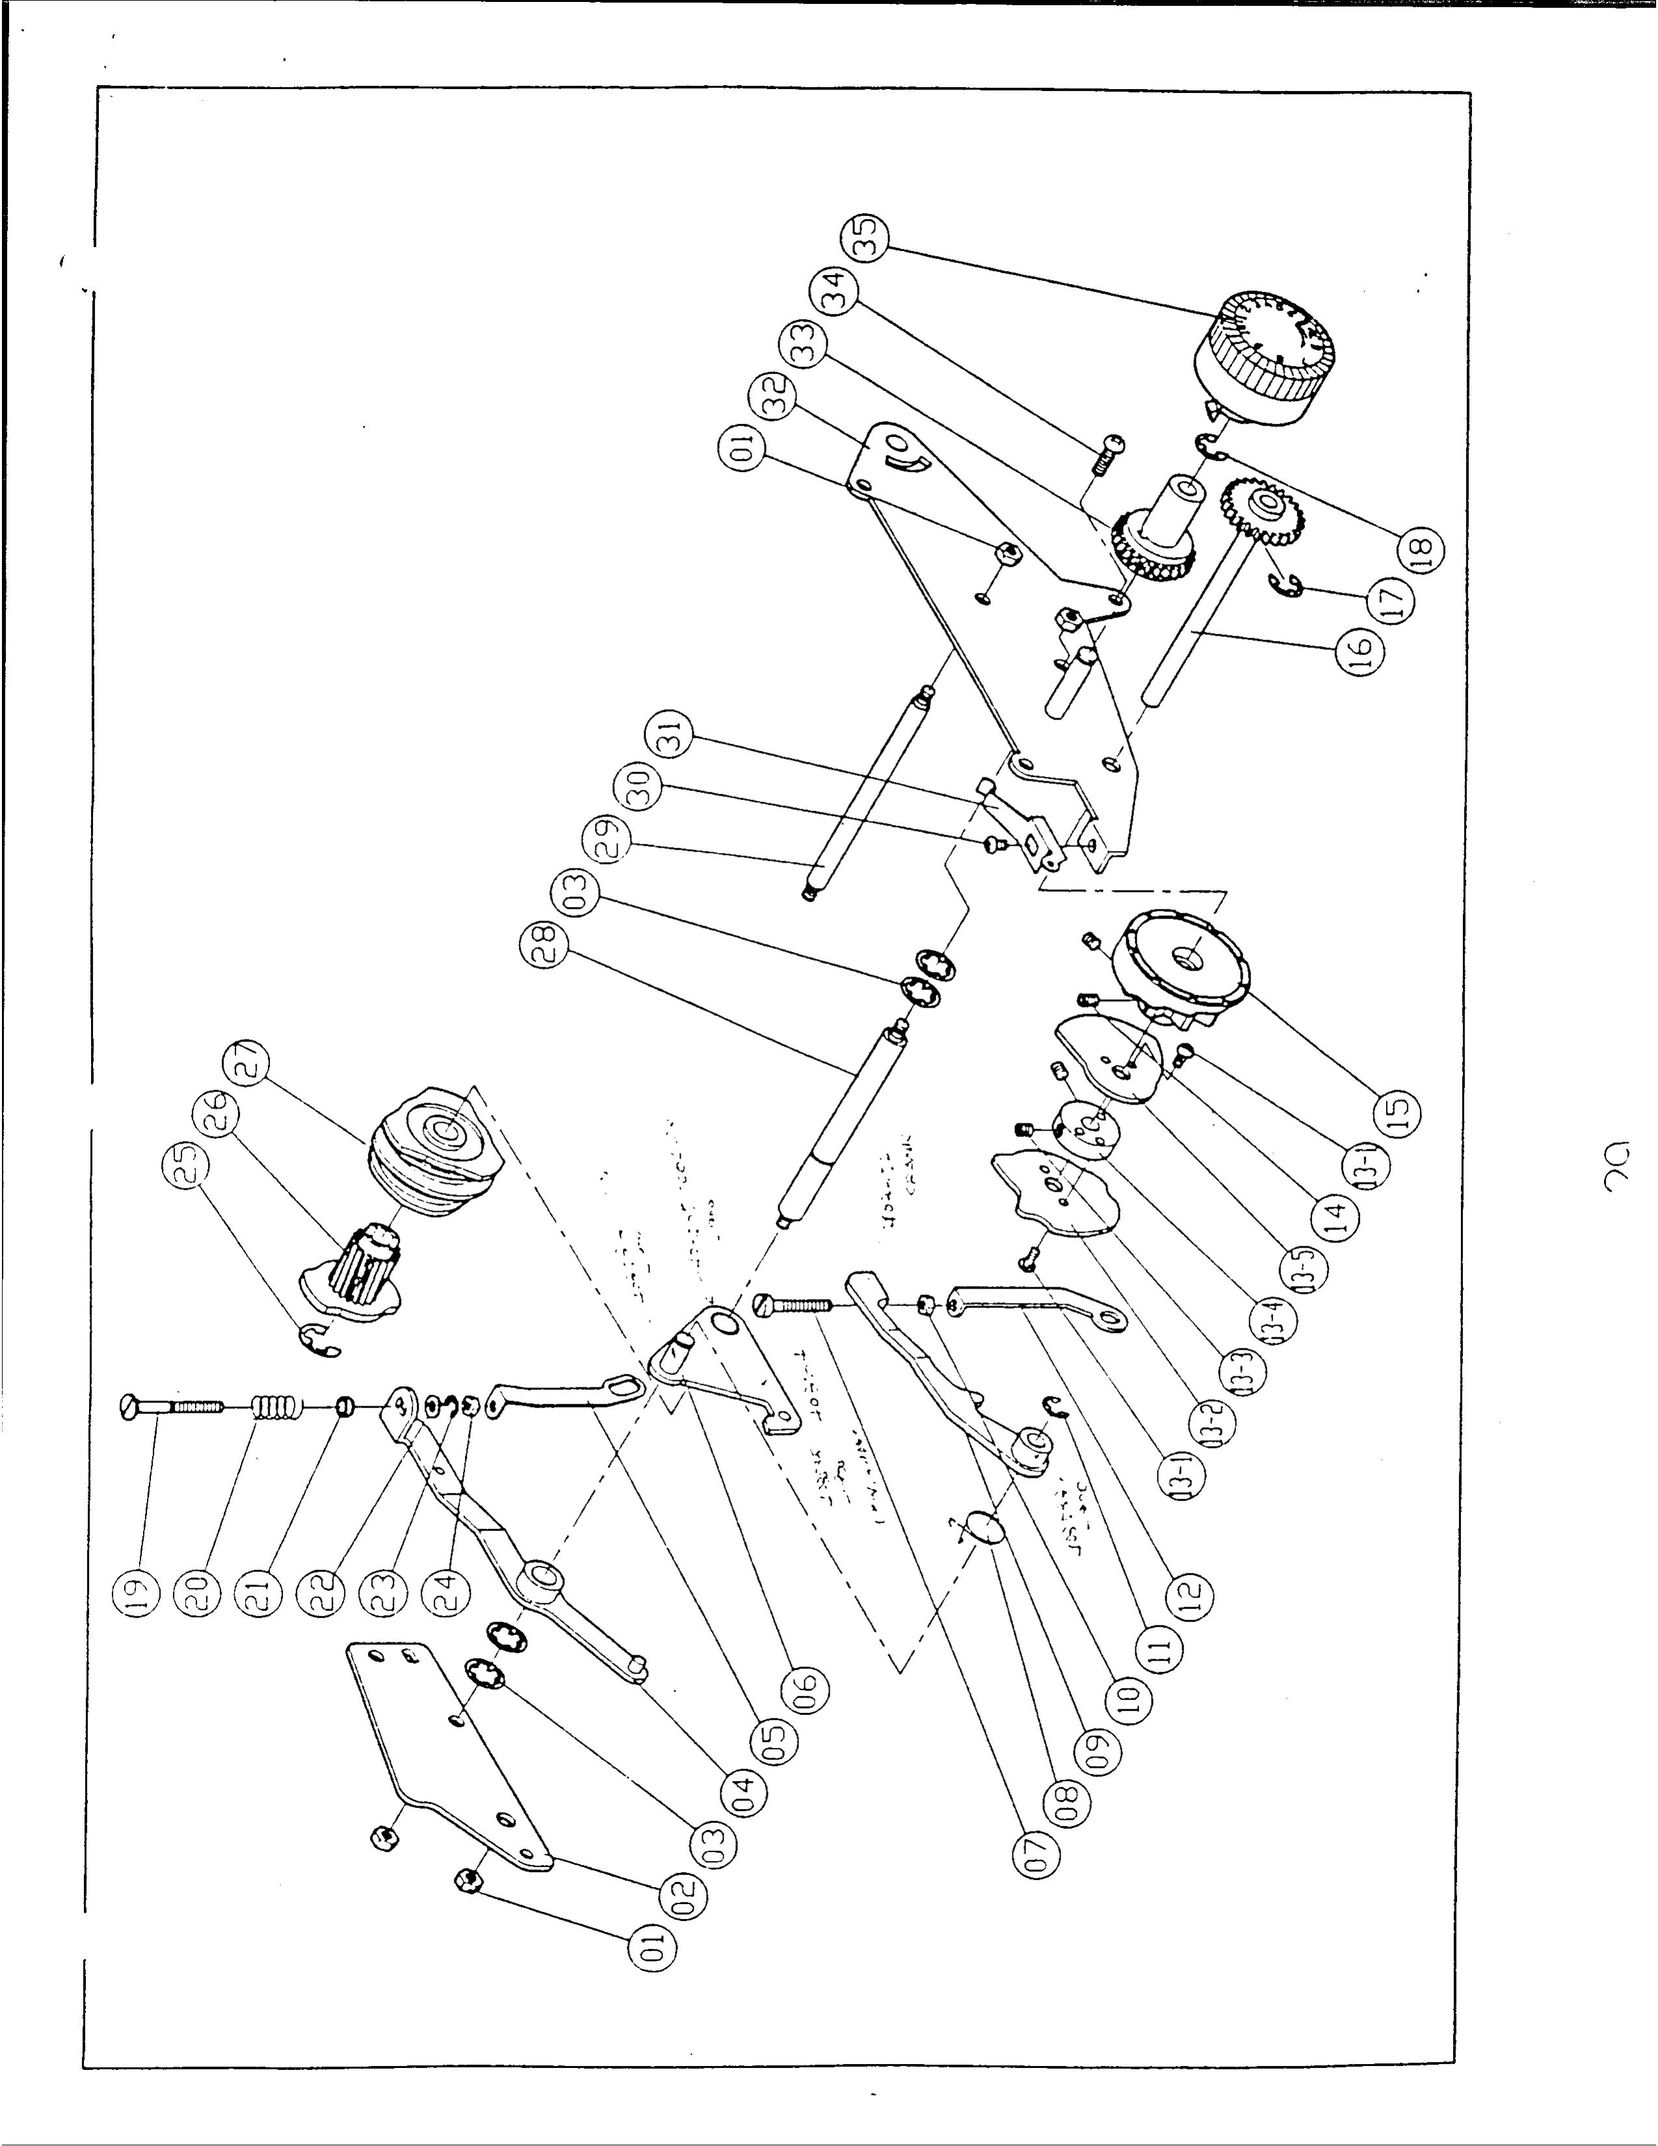 Singer 1019 Sewing Machine User Manual (Page 31)